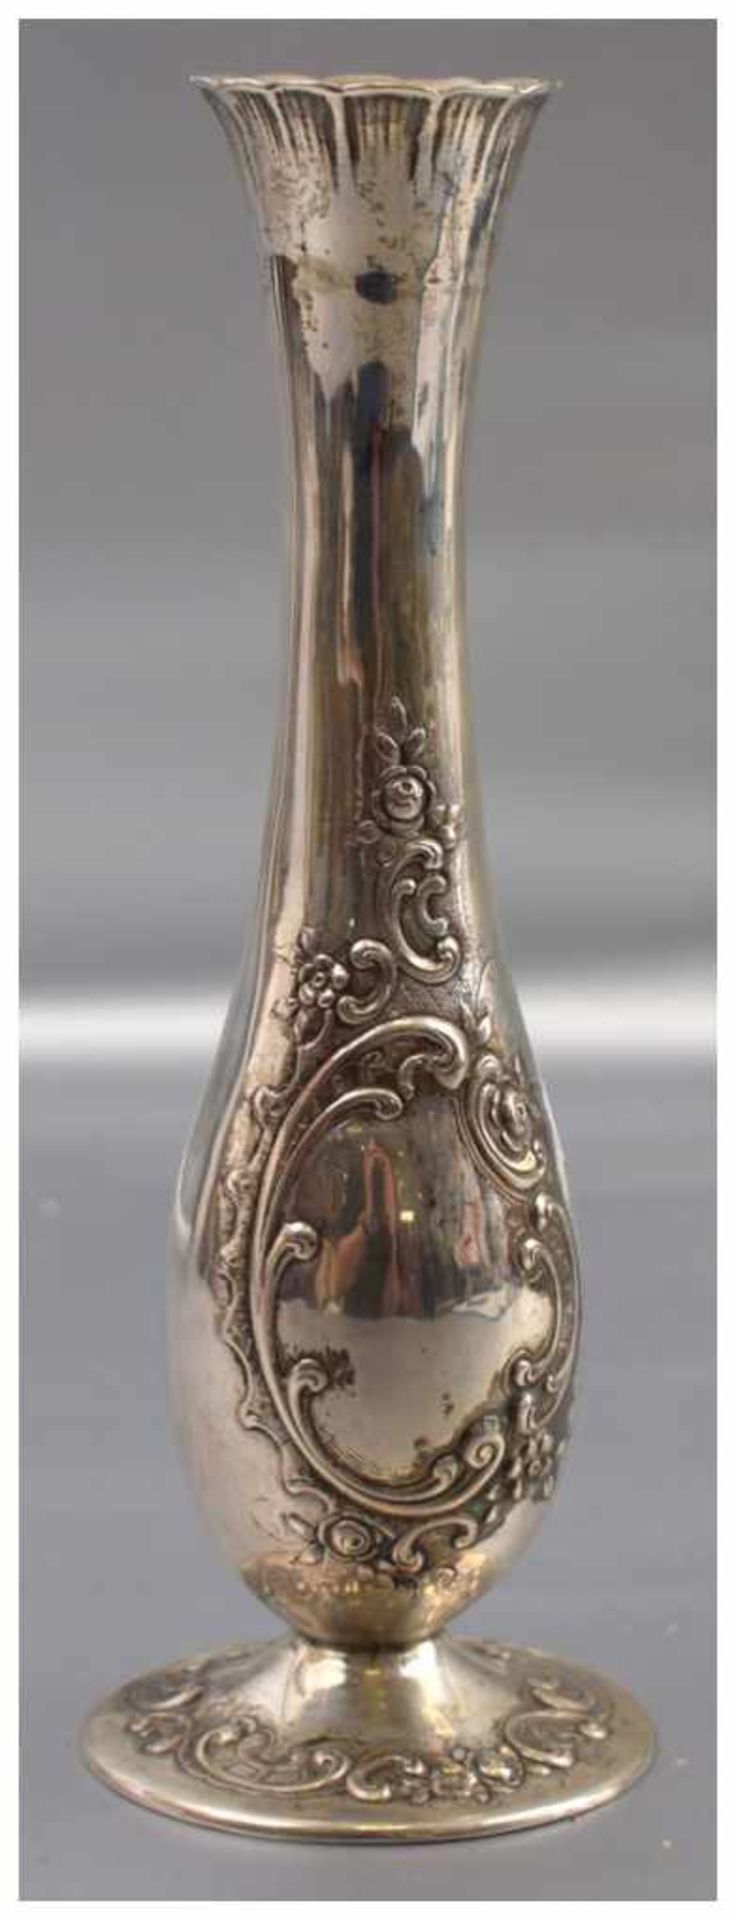 Vase runder, mit Barock-Ornamenten verzierter Fuß, leicht gebaucht, H 22 cm, 800er Silber